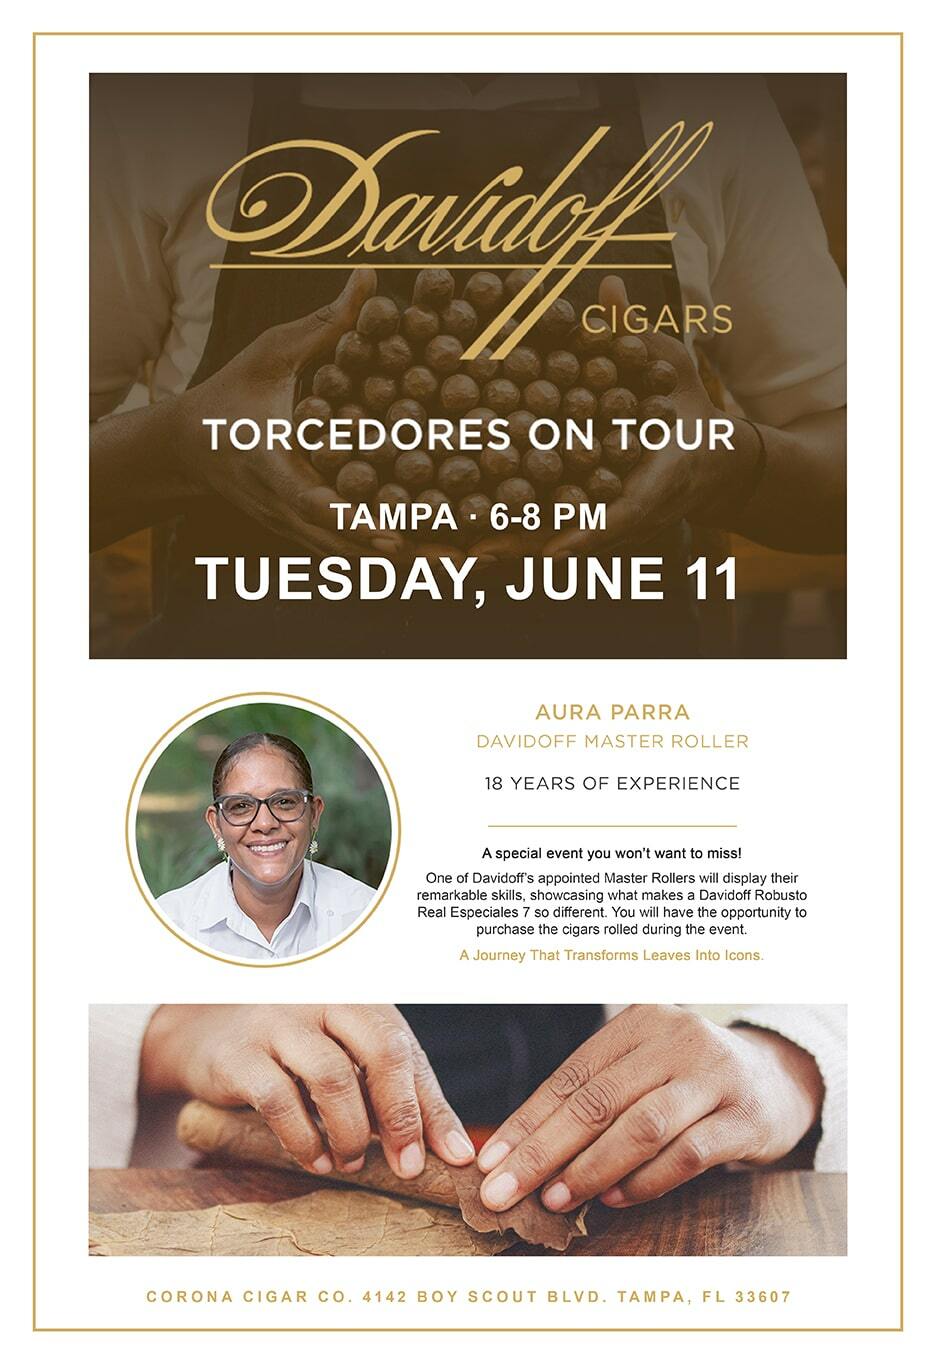 Davidoff Cigars Torcedores Tour Event - Tampa